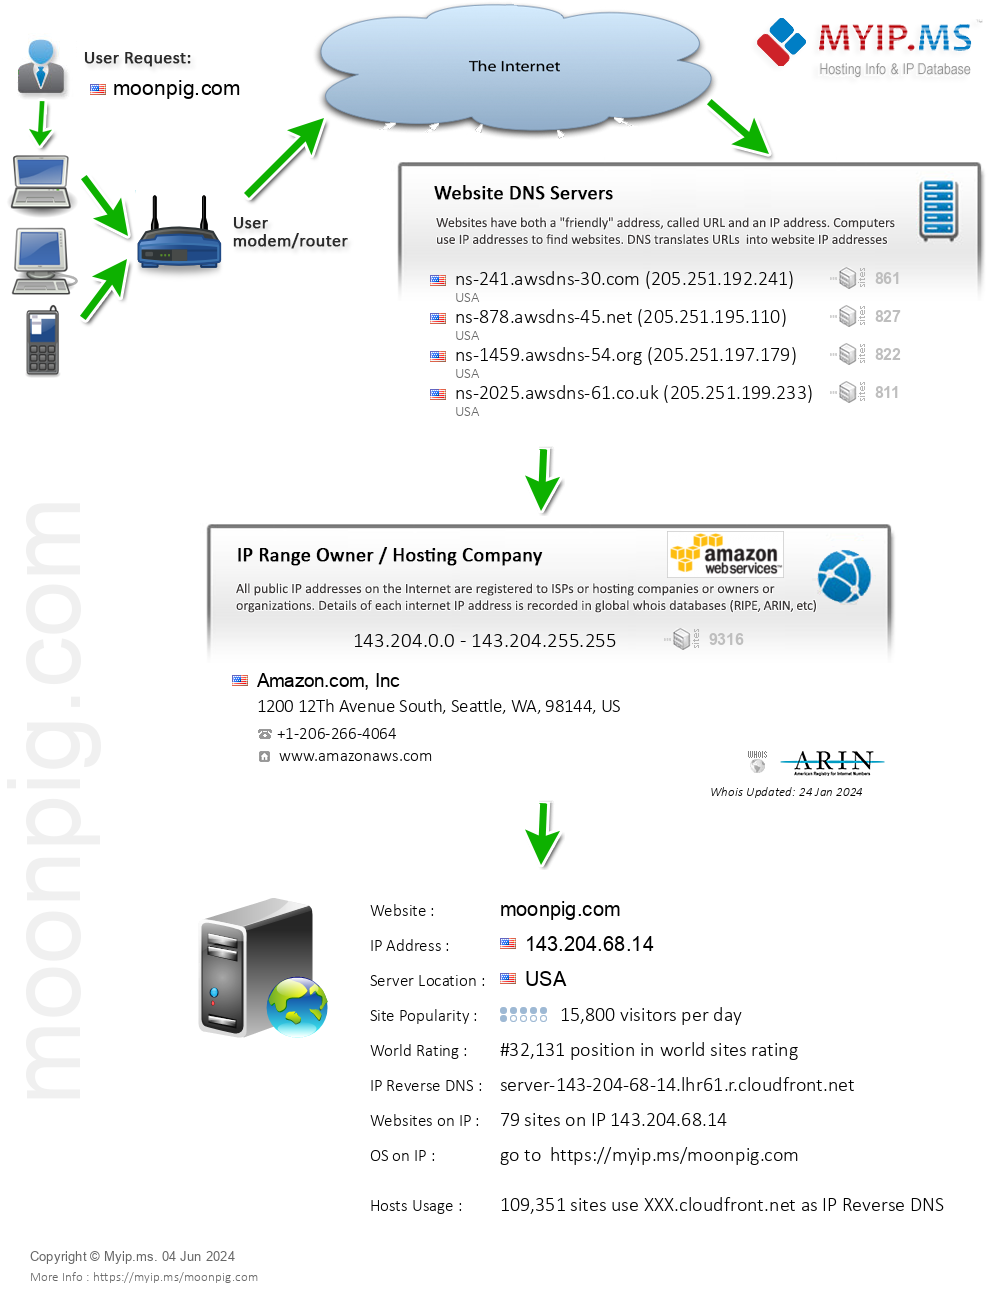 Moonpig.com - Website Hosting Visual IP Diagram